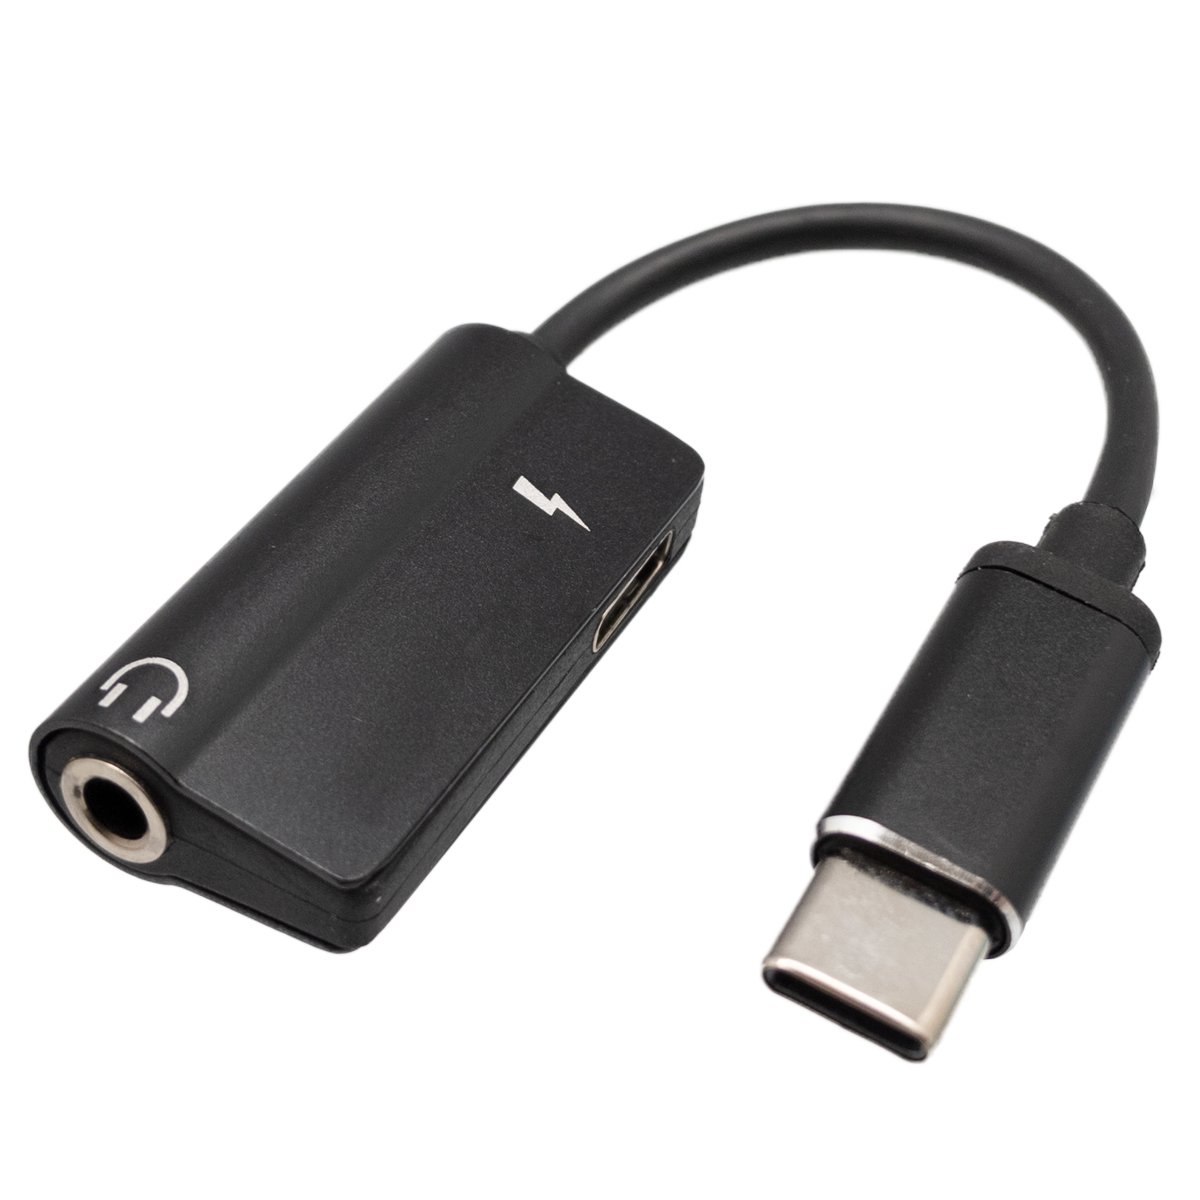 Adaptador USB-C a USB-C + Jack 3.5mm, àudio + carga